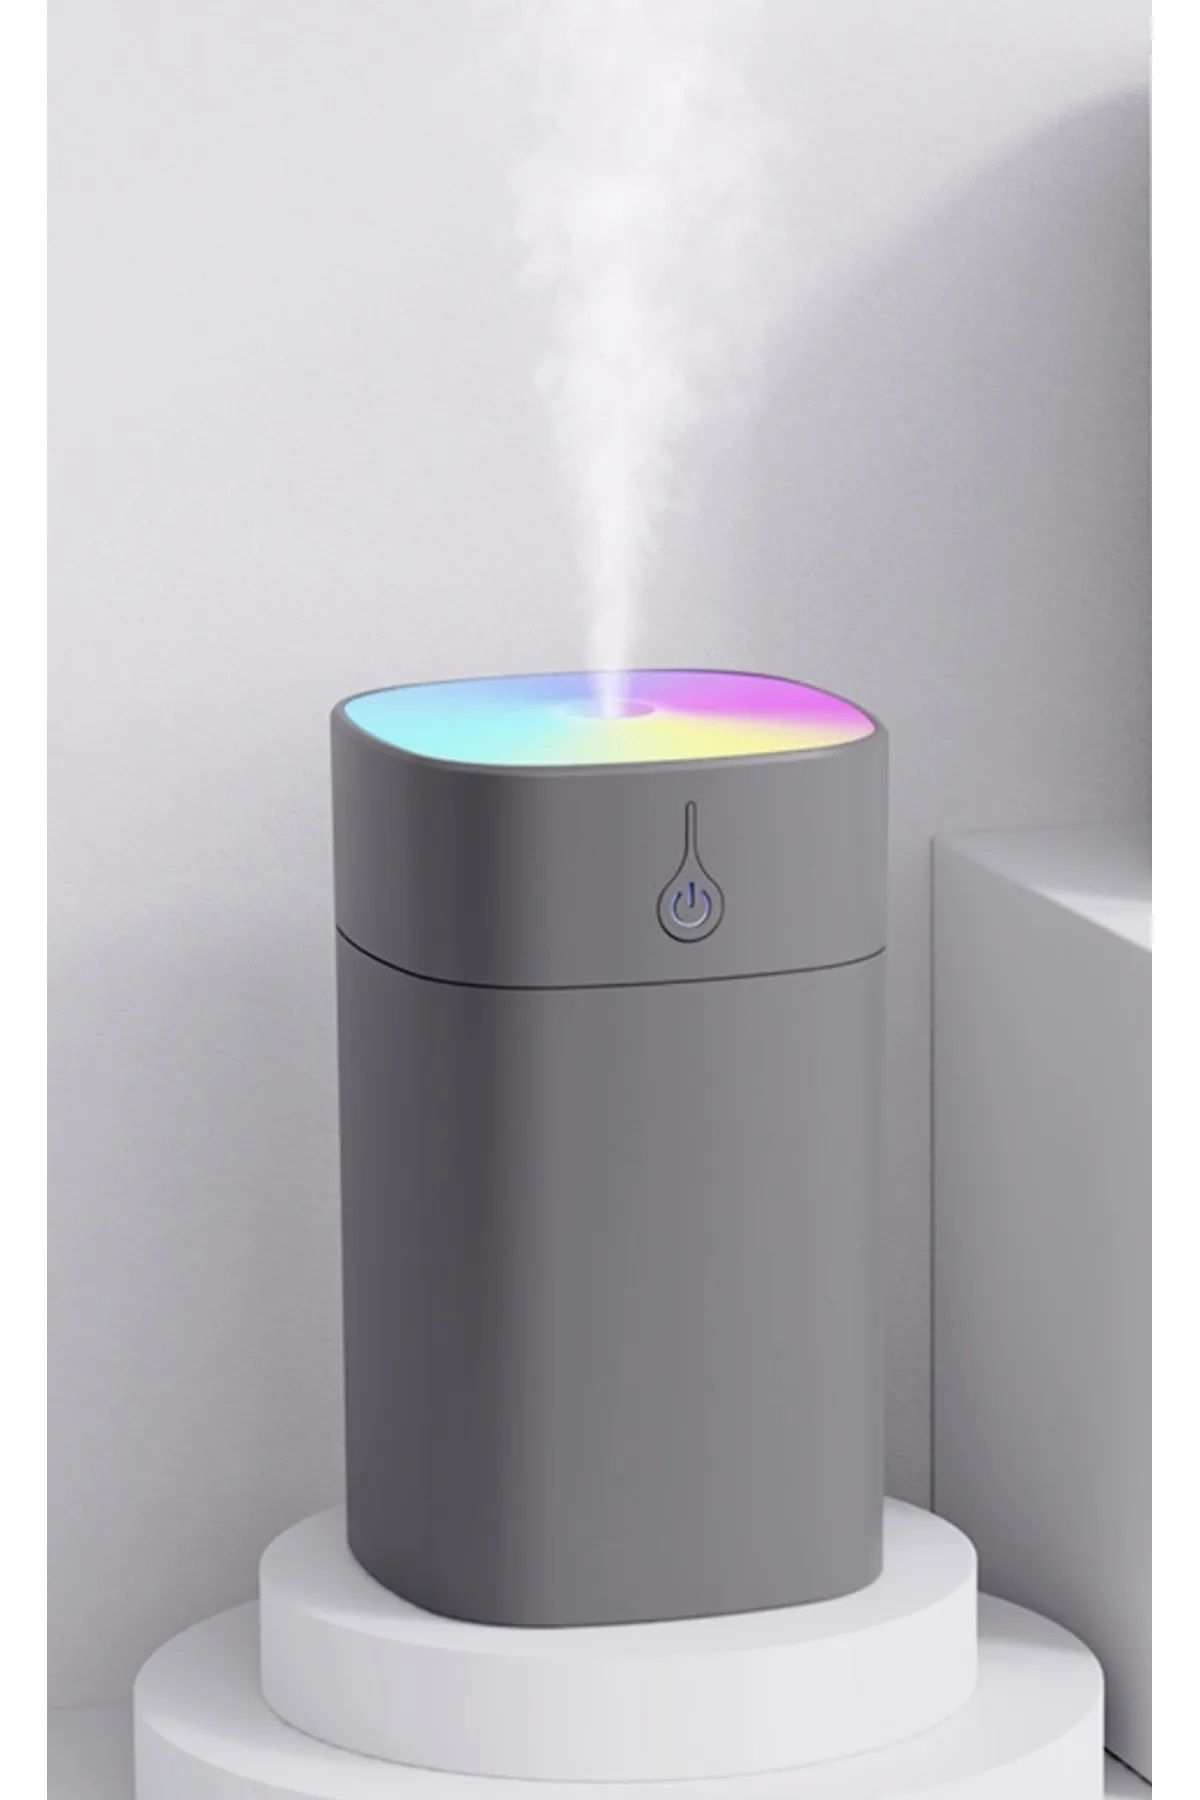 SCARPİON H2O Humidifier 400 Ml Ulrasonik Hava Nemlendirici Buhar Makinesi Ve Aroma Difüzörü